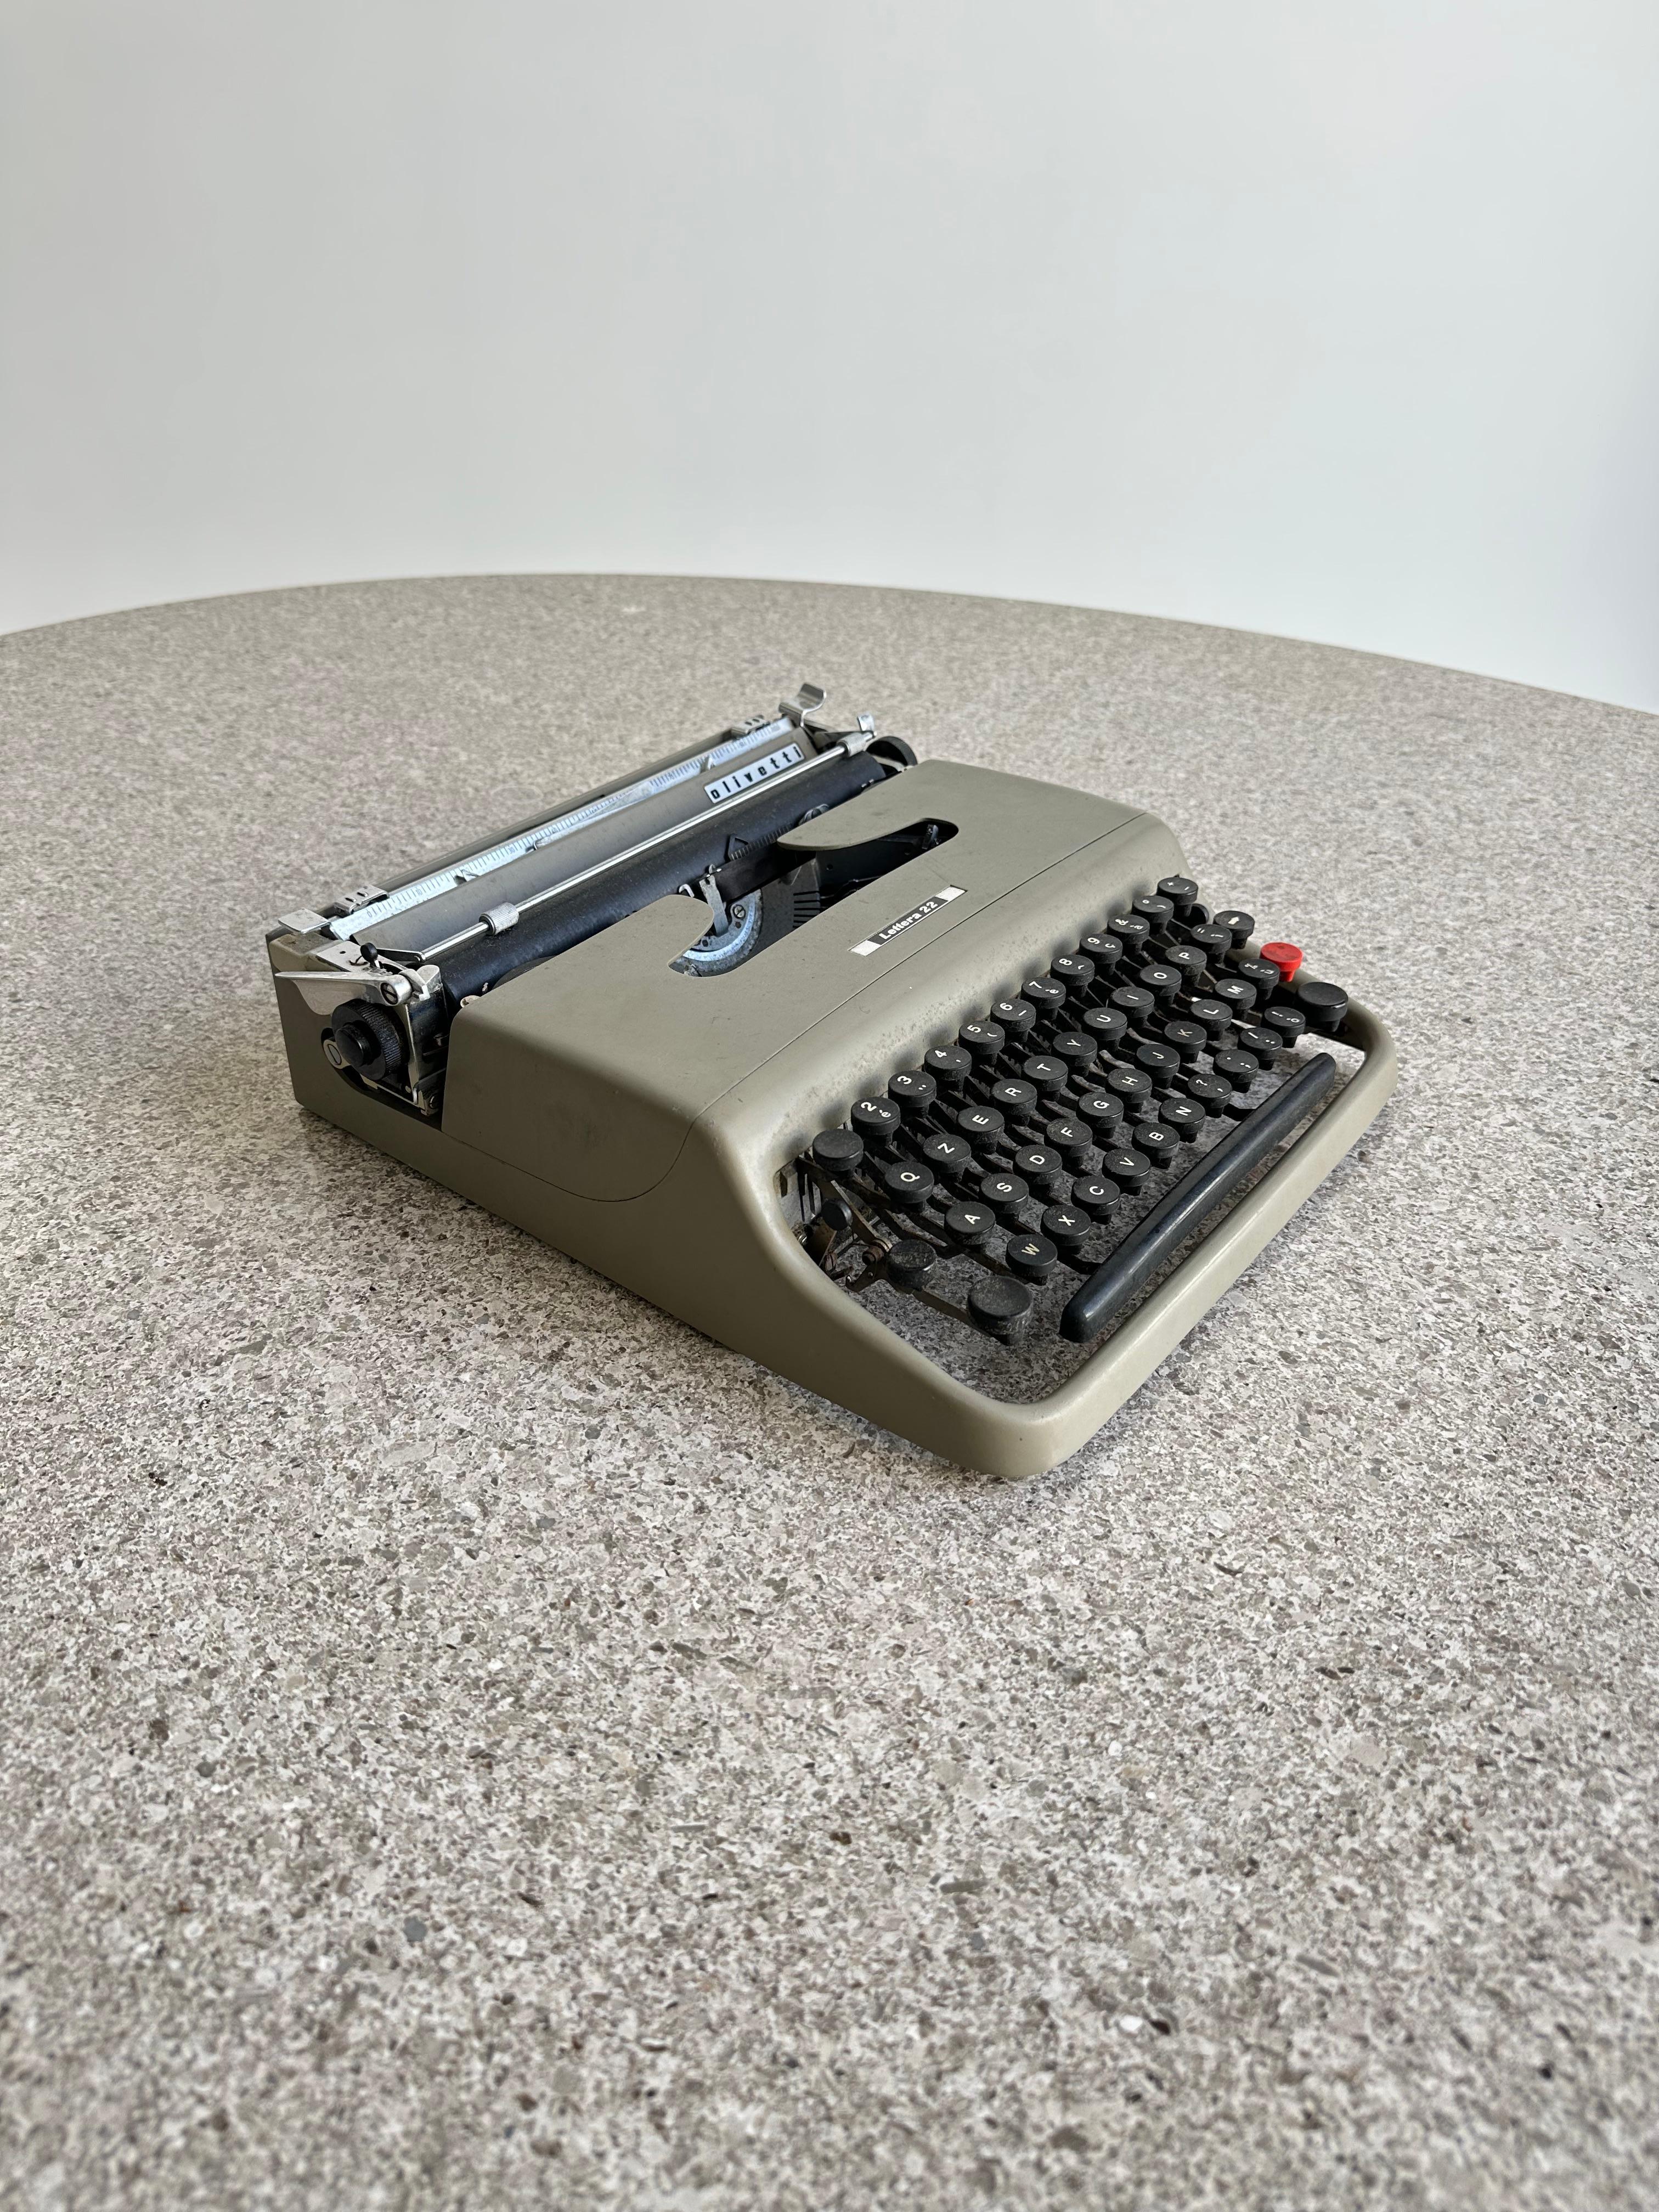 Machine à écrire portable Lettera 22, en métal émaillé et en plastique, conçue par Marcello Nizzoli et produite par le fabricant progressiste Olivetti en Italie, vers 1954. Nizzoli (1887-1969), peintre, graphiste et architecte, a été le directeur du